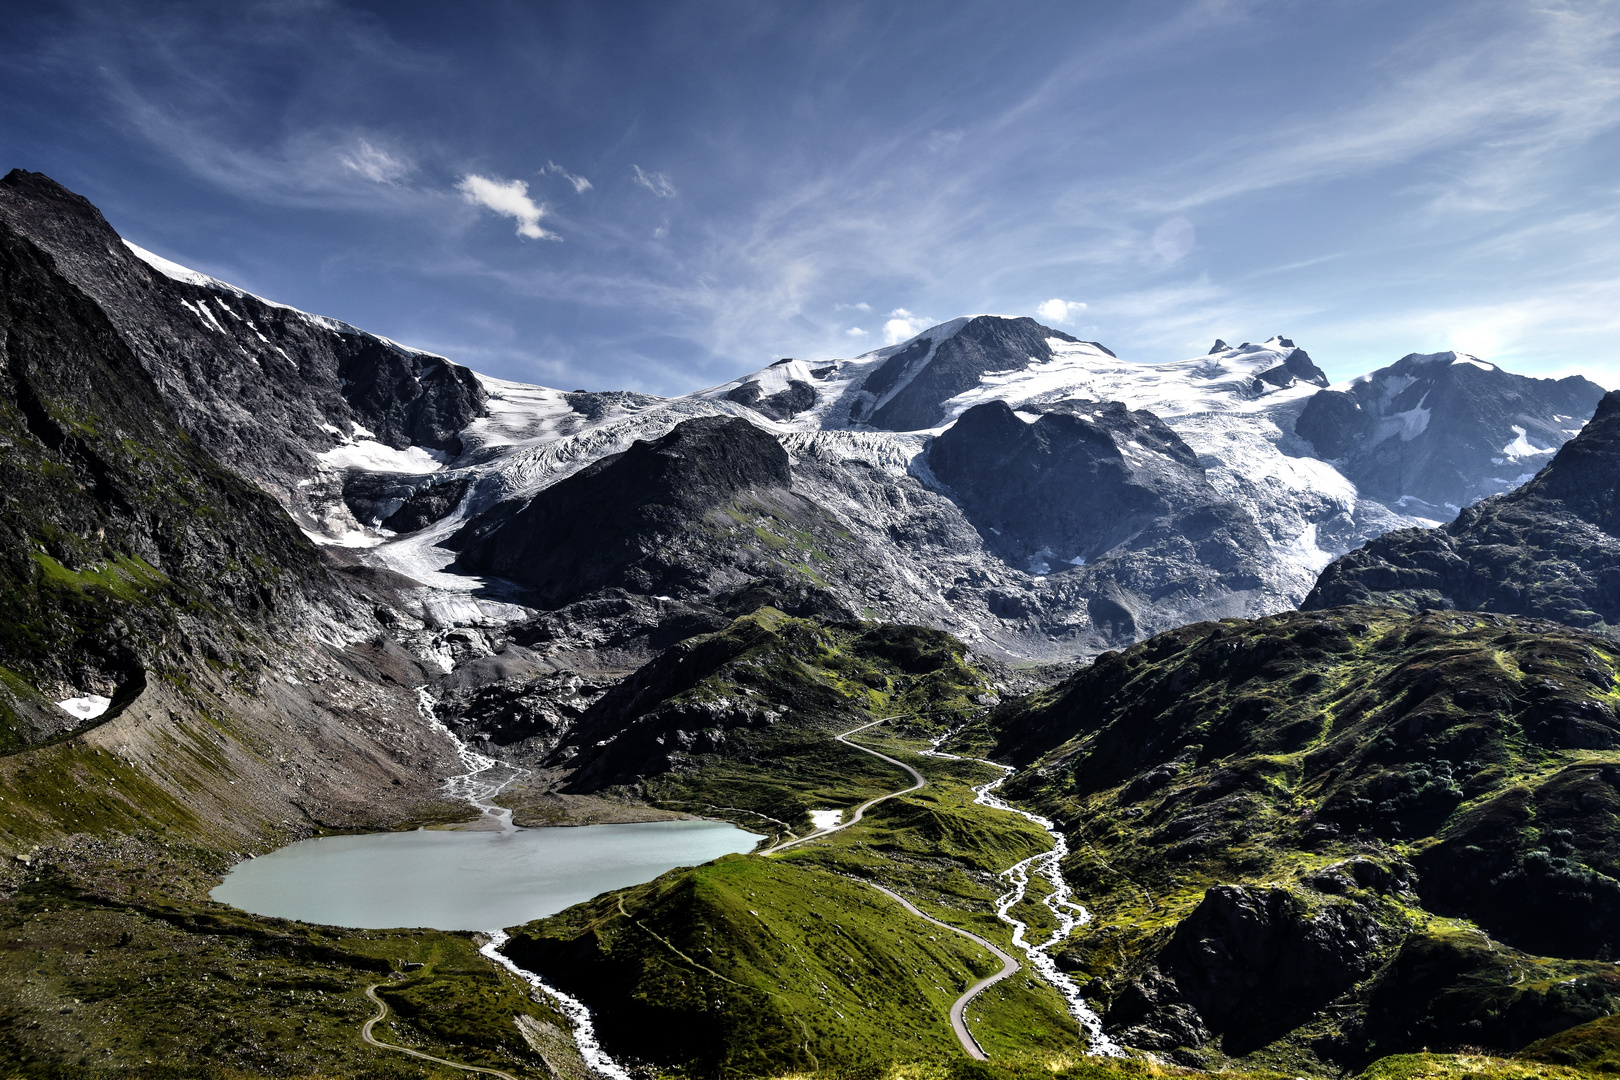 Gletscher Schweiz